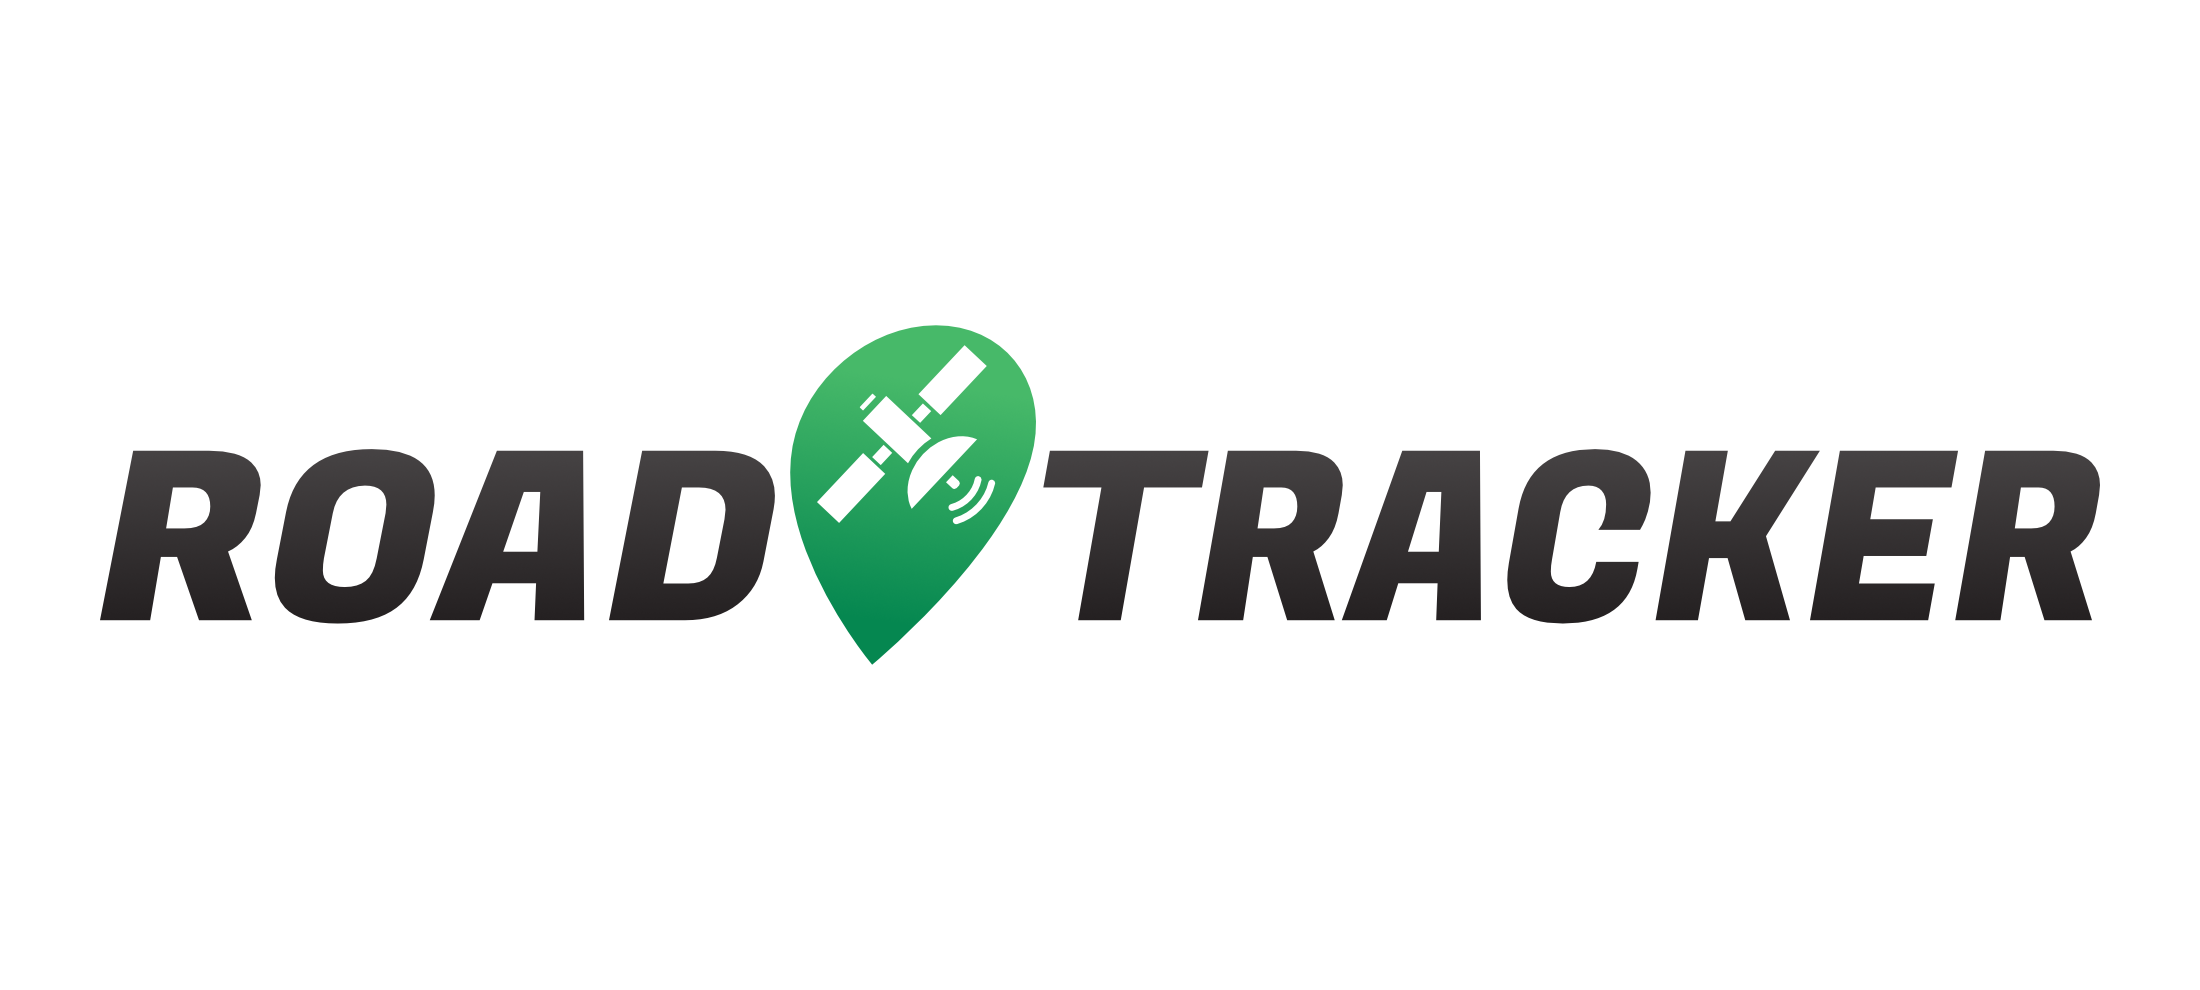 RoadTracker_Logo